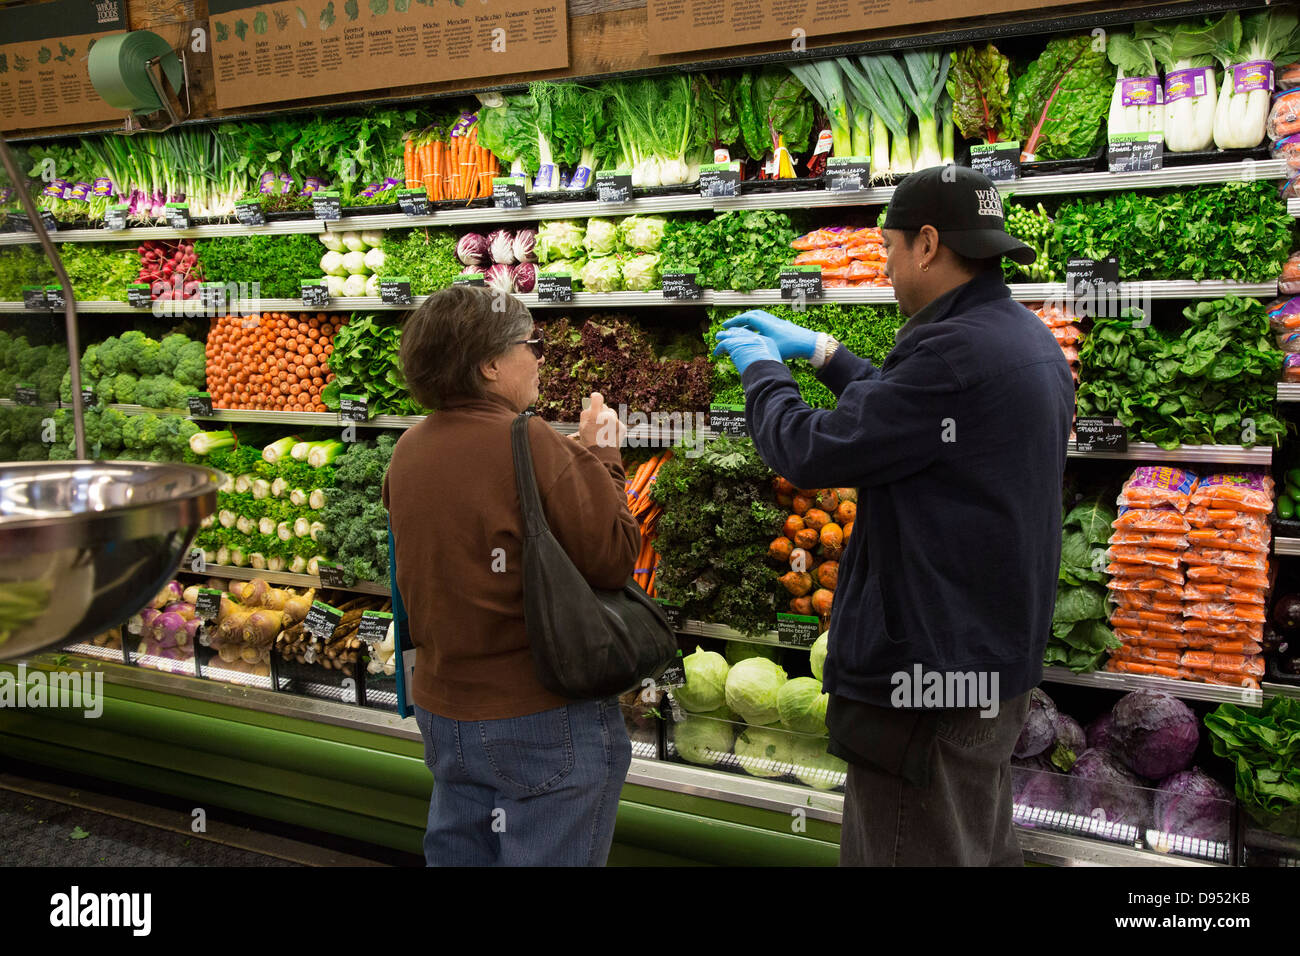 Whole Foods Market Stock Photo